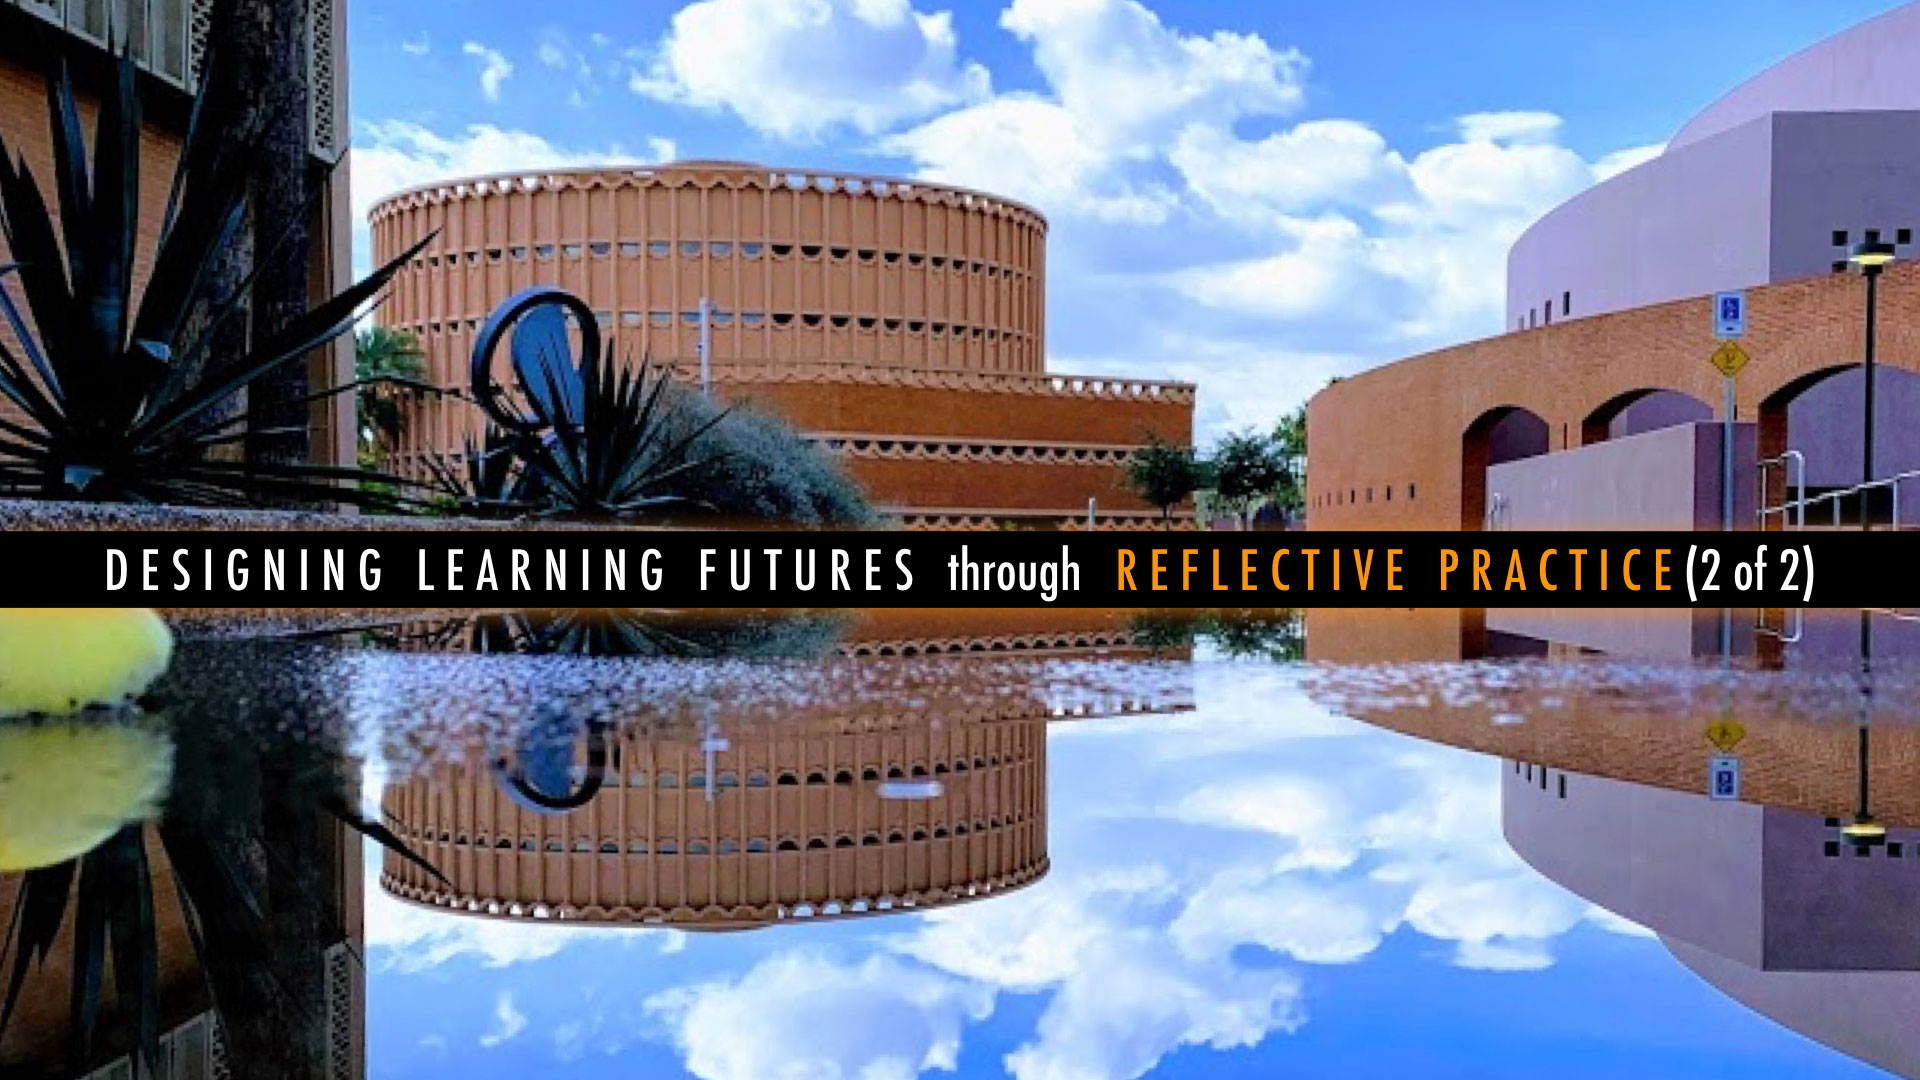 A reflecting pool at ASU